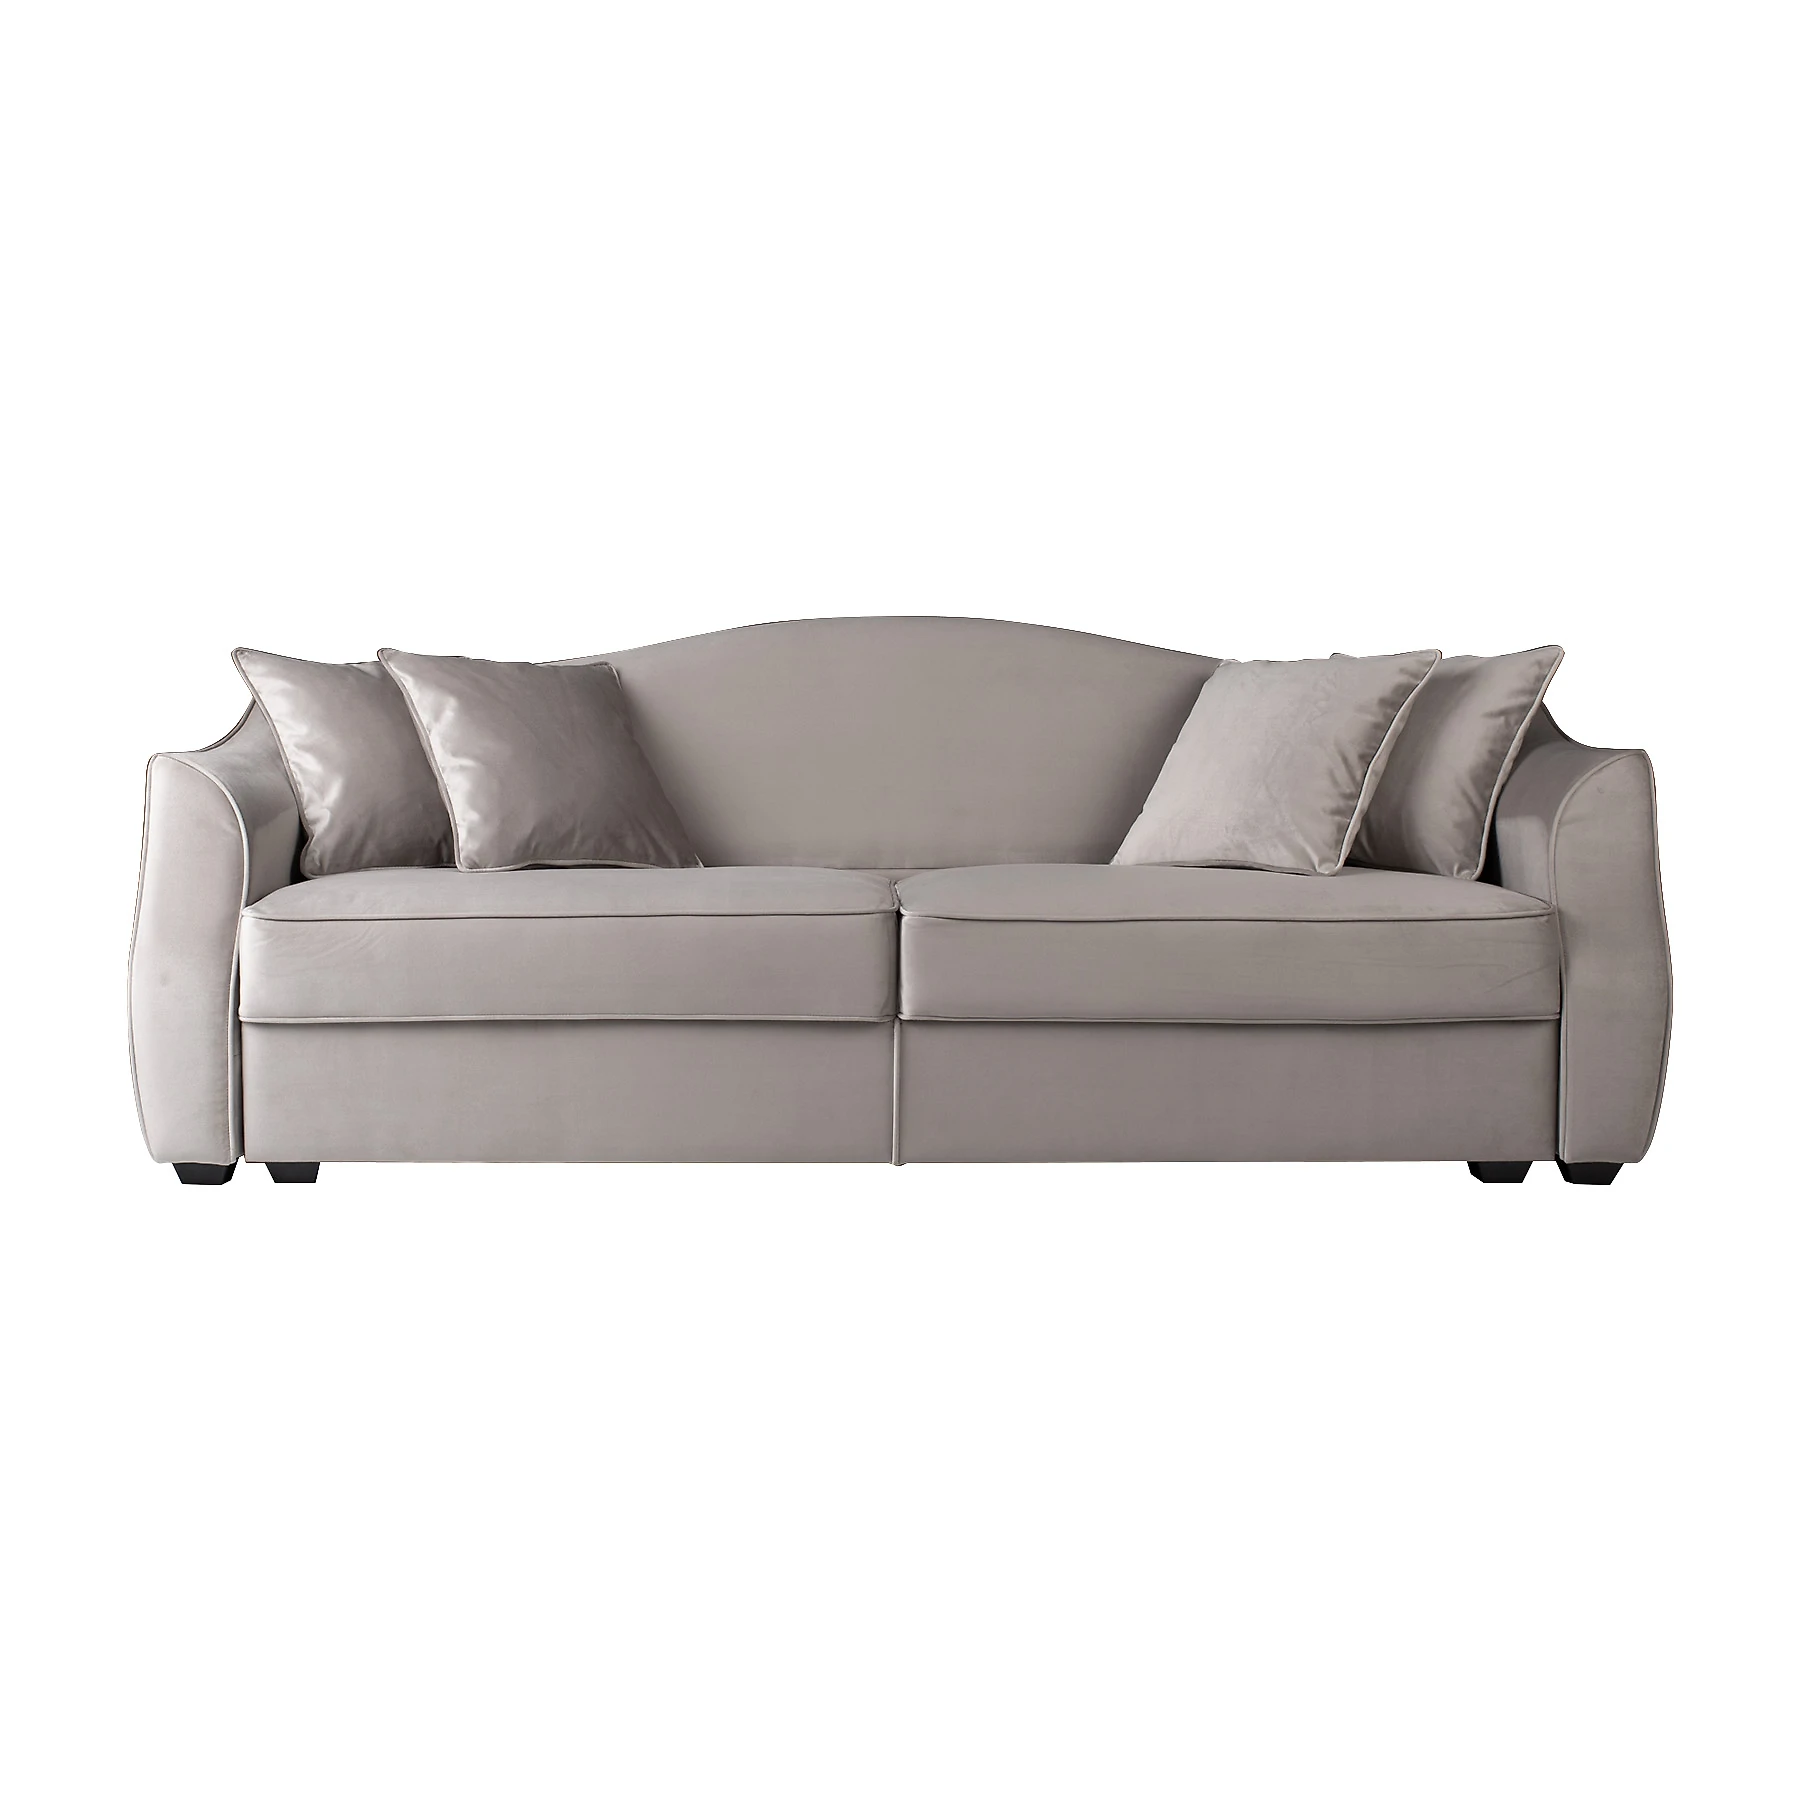 Прямой диван серого цвета Hermes-B 0124,2,2